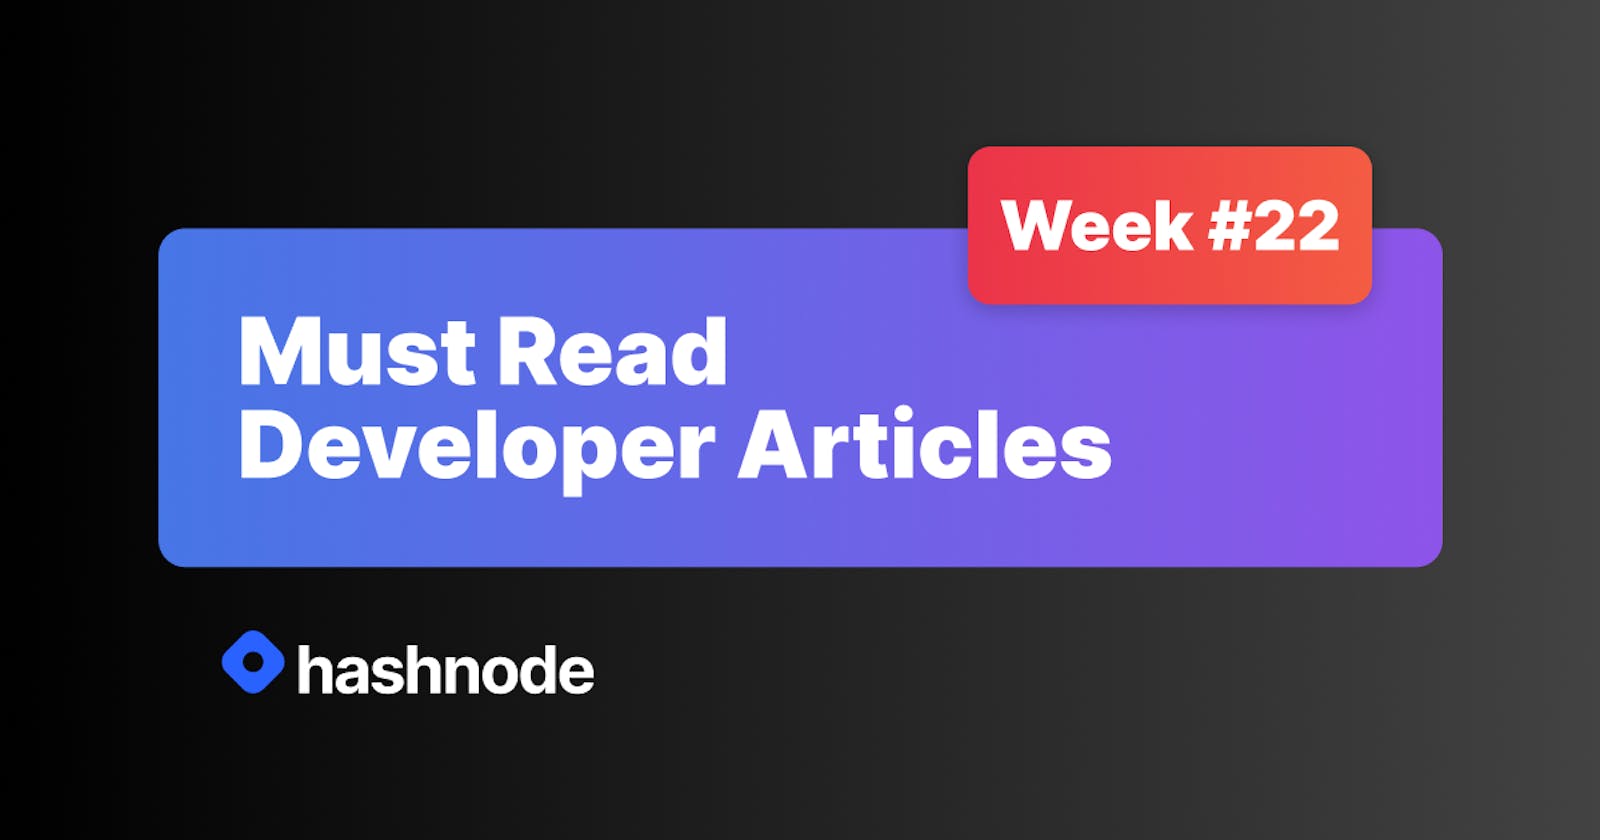 Must Read Developer Articles on Hashnode - #22